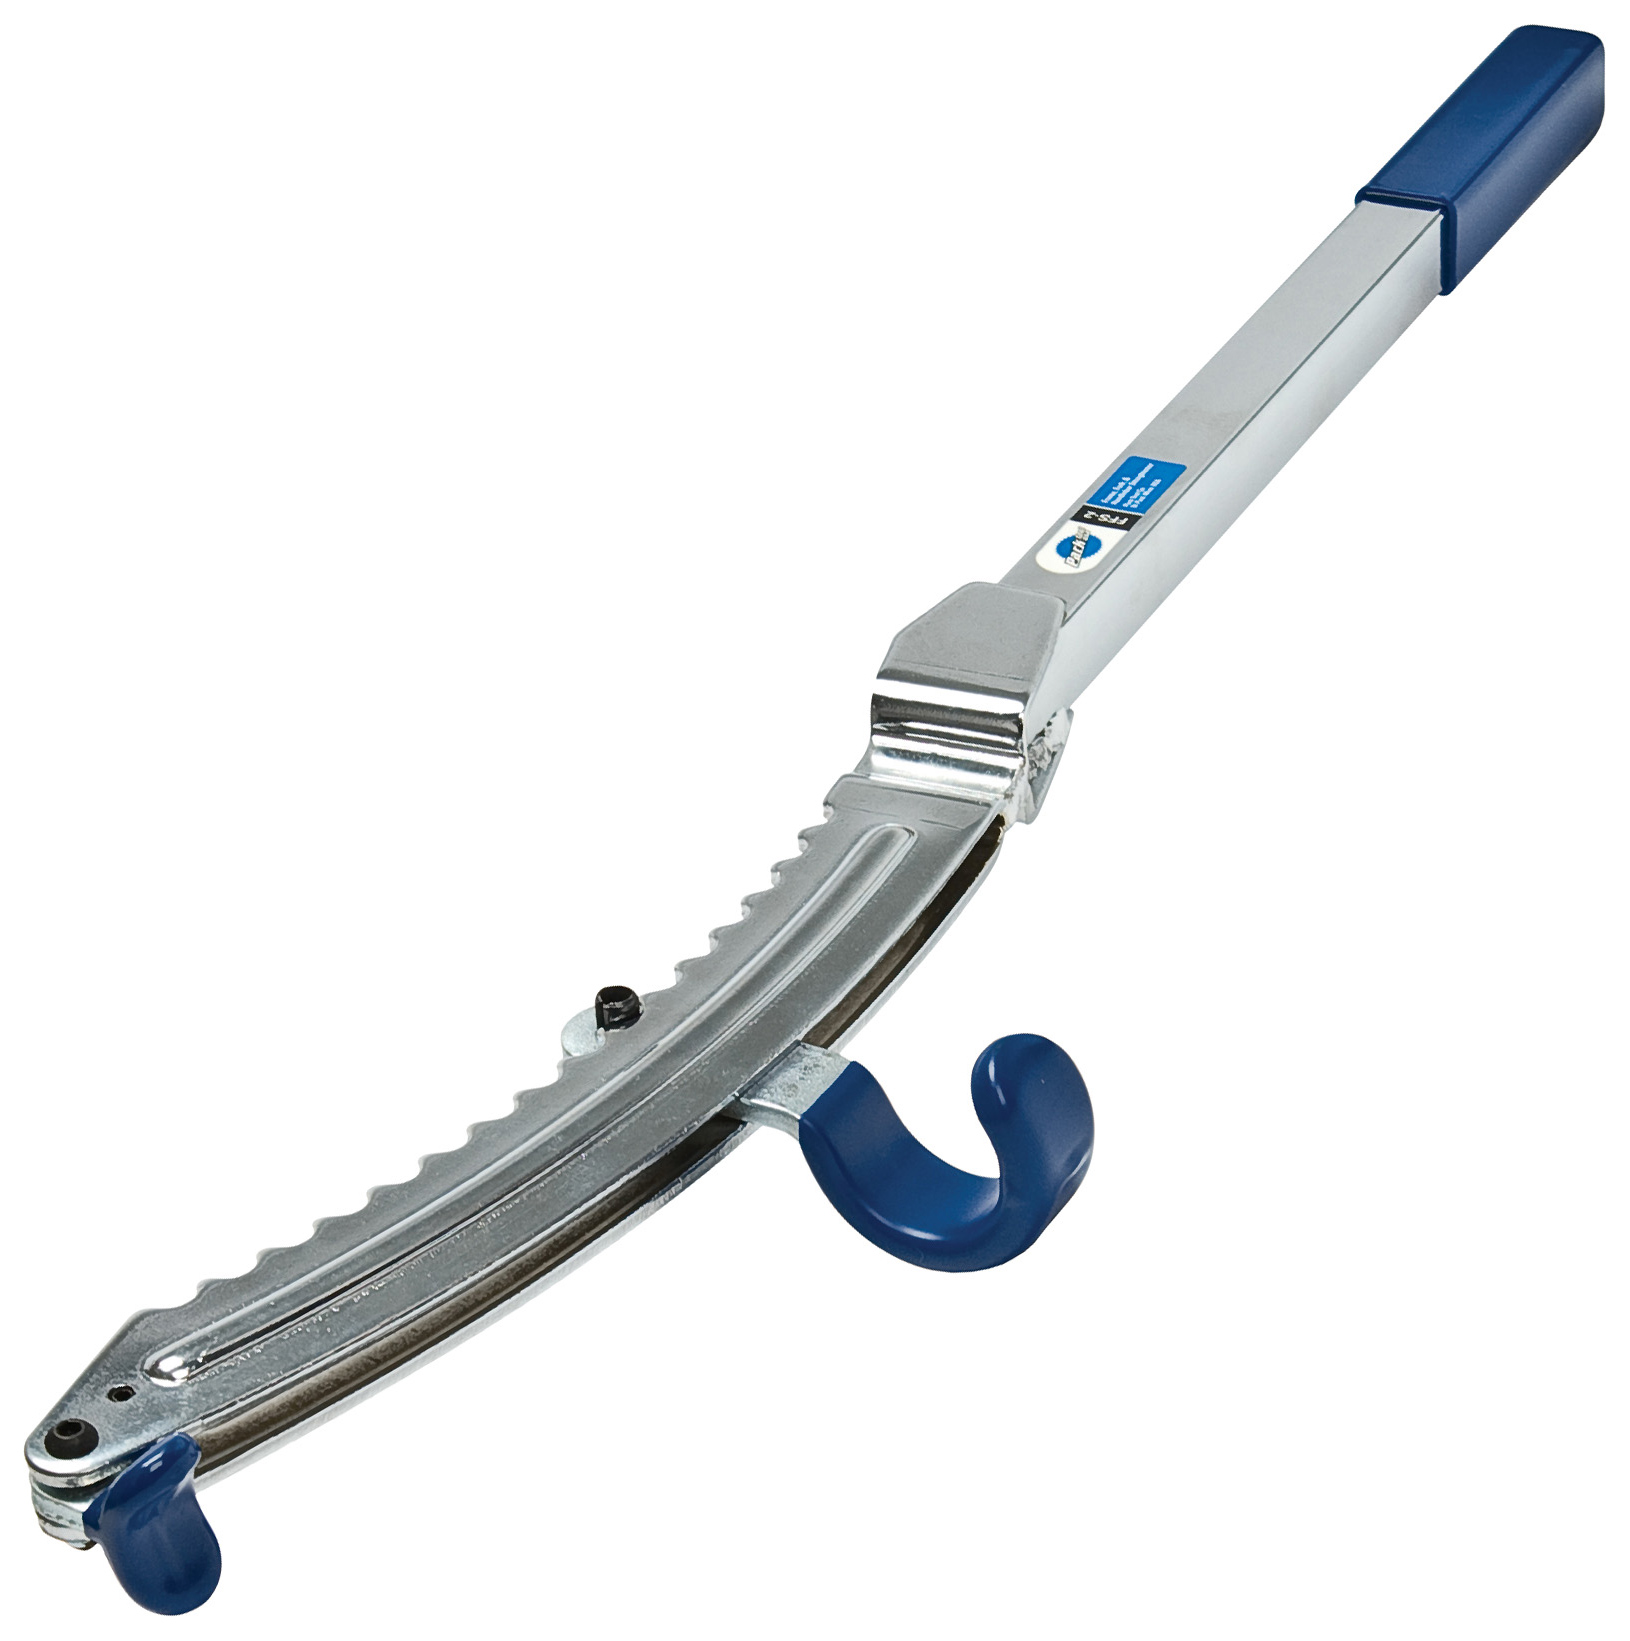  Инструмент для велосипеда Parktool для правки рам, вилок и труб (PTLFFS-2)